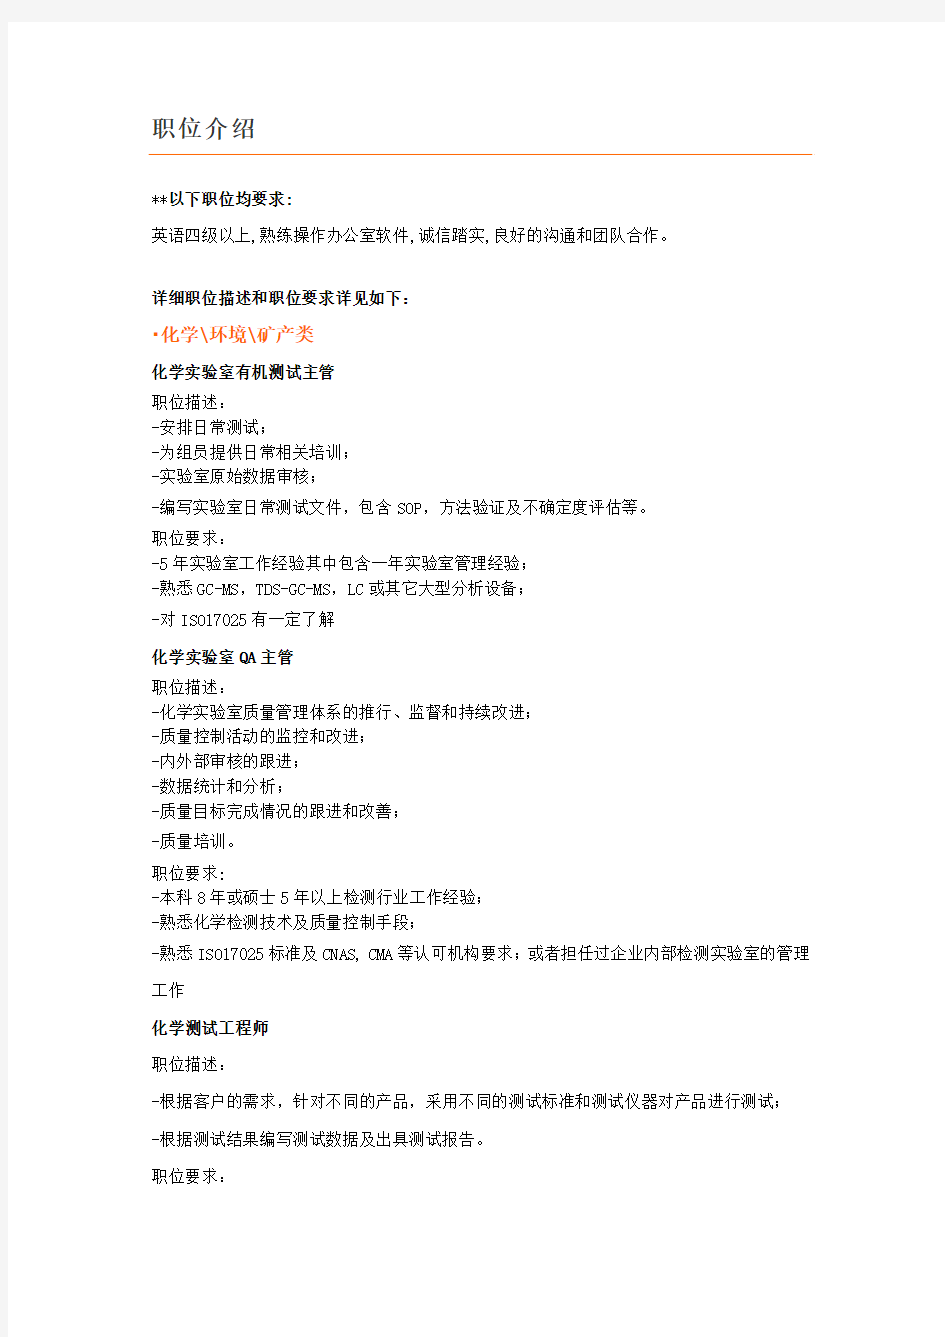 SGS广州专场招聘会职位列表详细